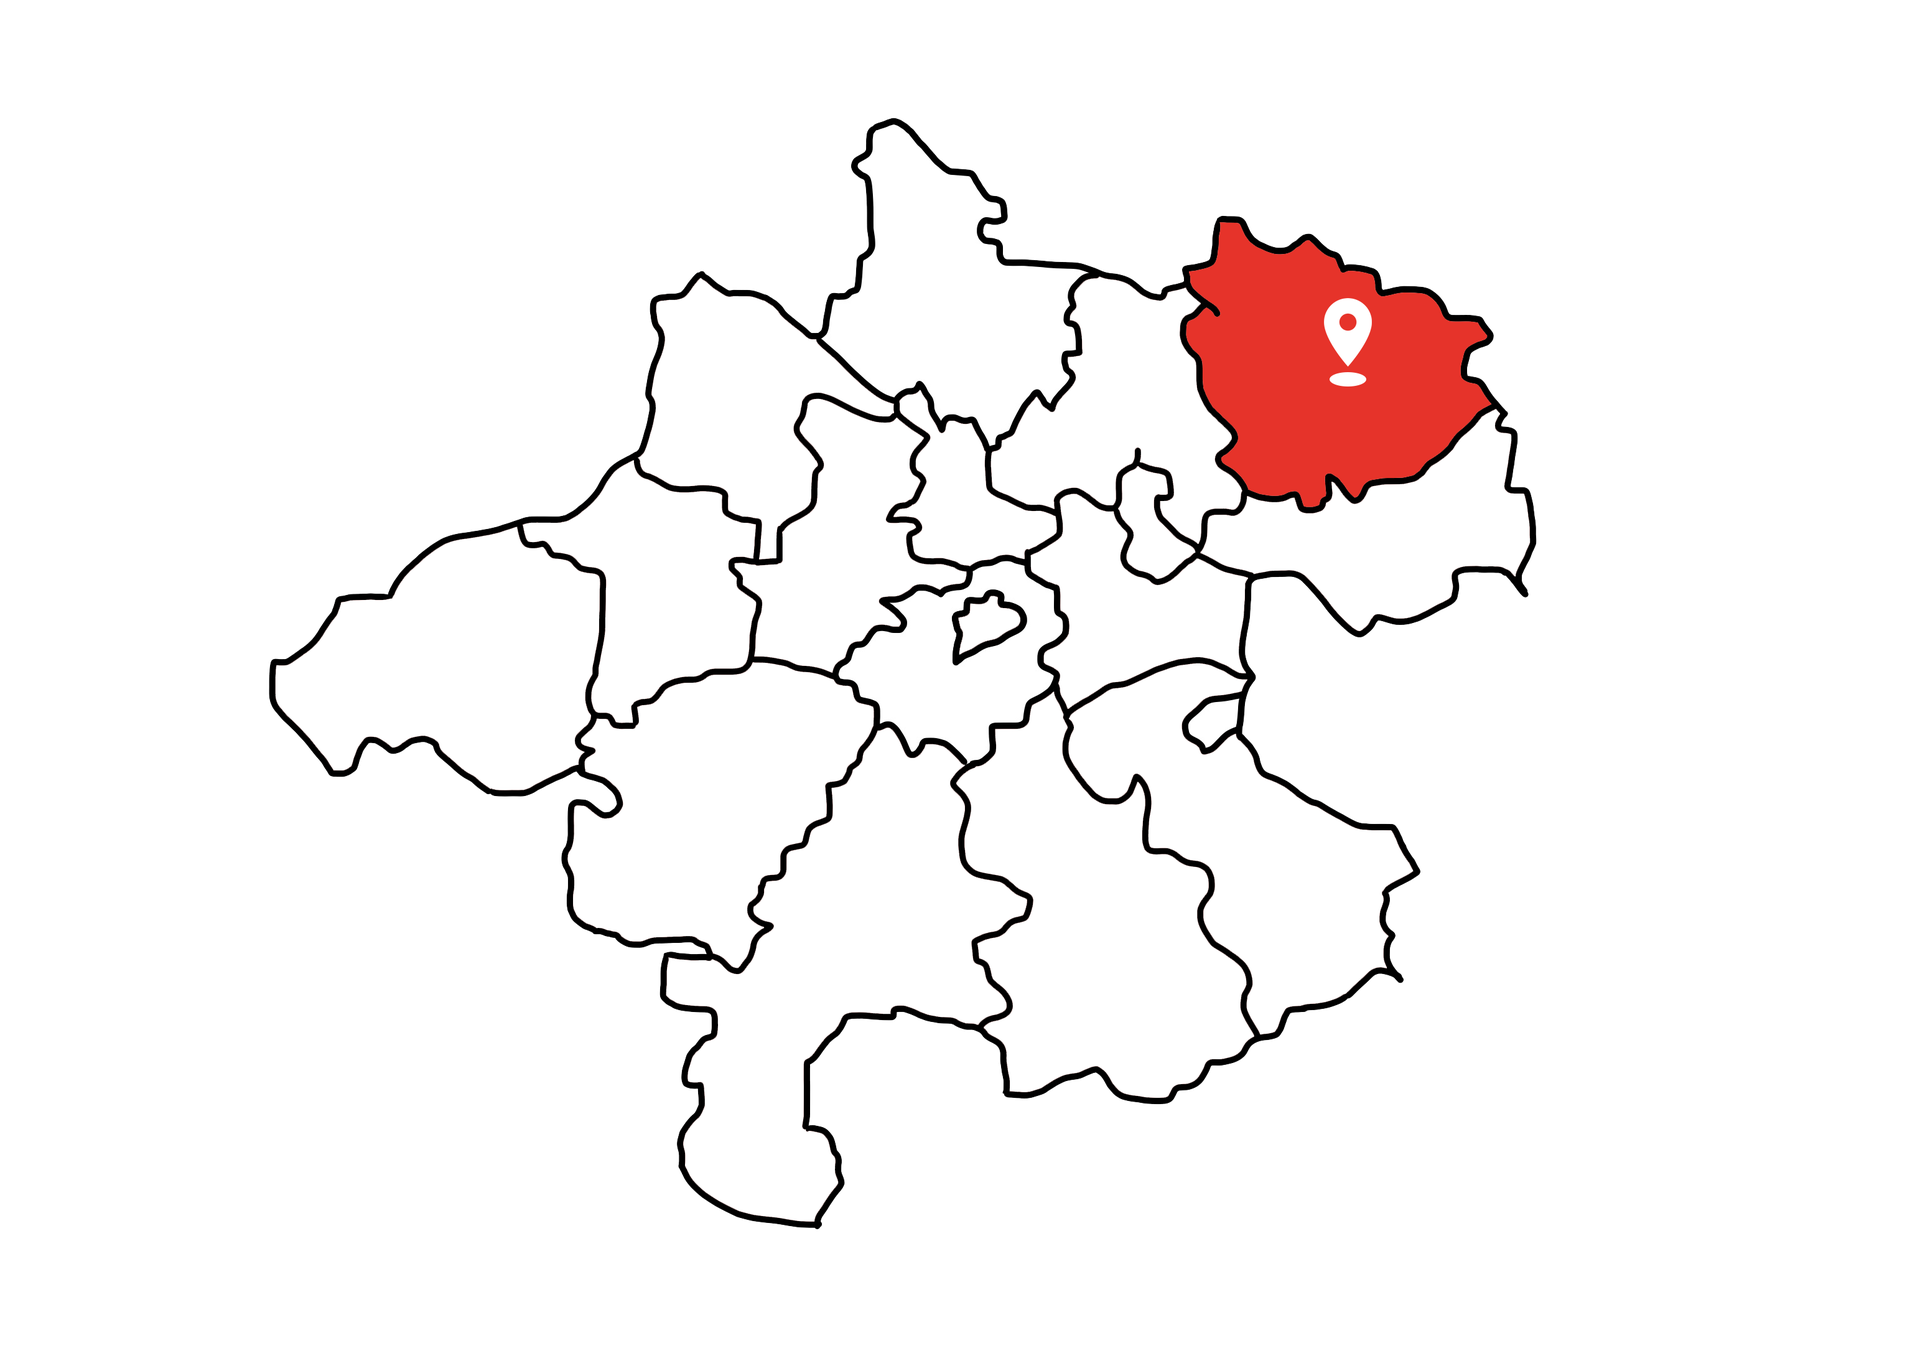 Eine Landkarte die Oberösterreich zeigt. Der Bezirk Freistadt ist rot markiert. Die restlichen Bezirke sind weiß.